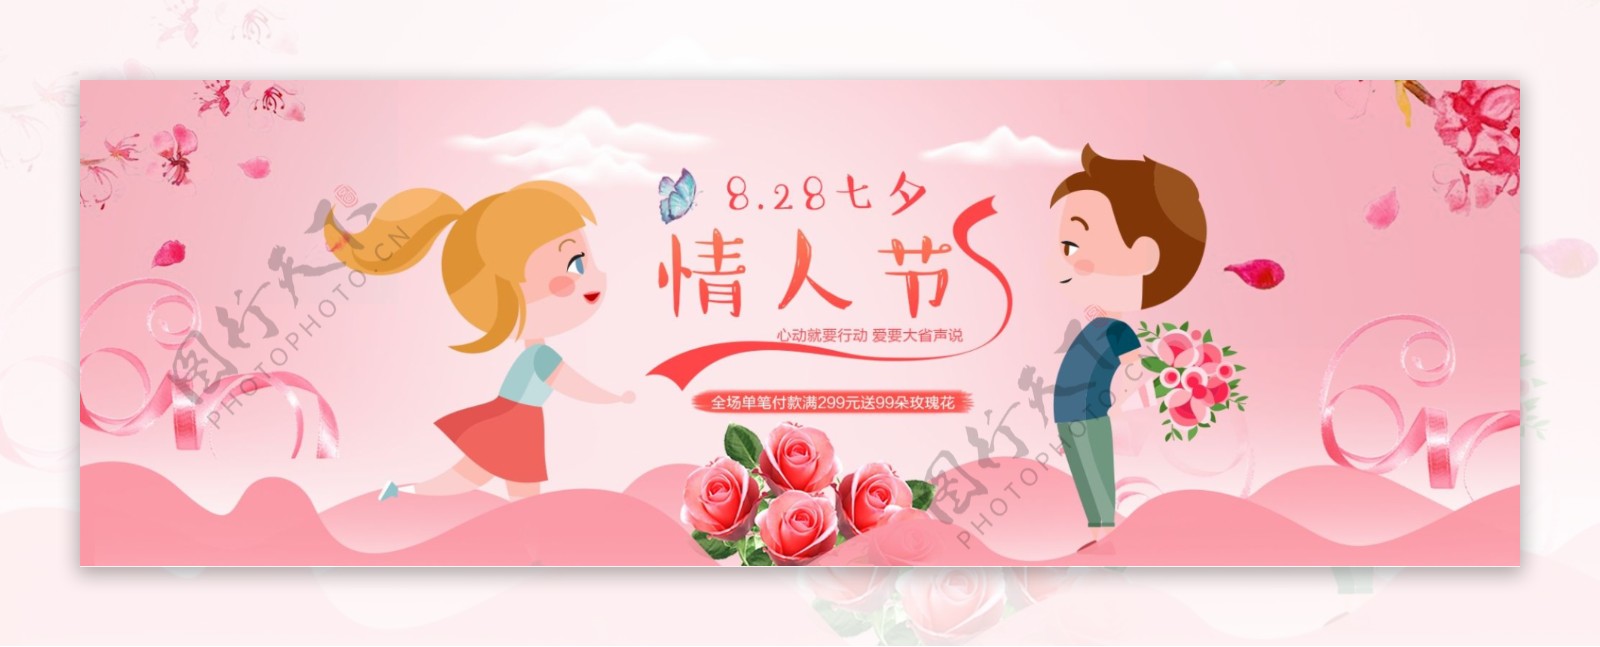 电商淘宝天猫七夕情人节活动促销海报粉色banner